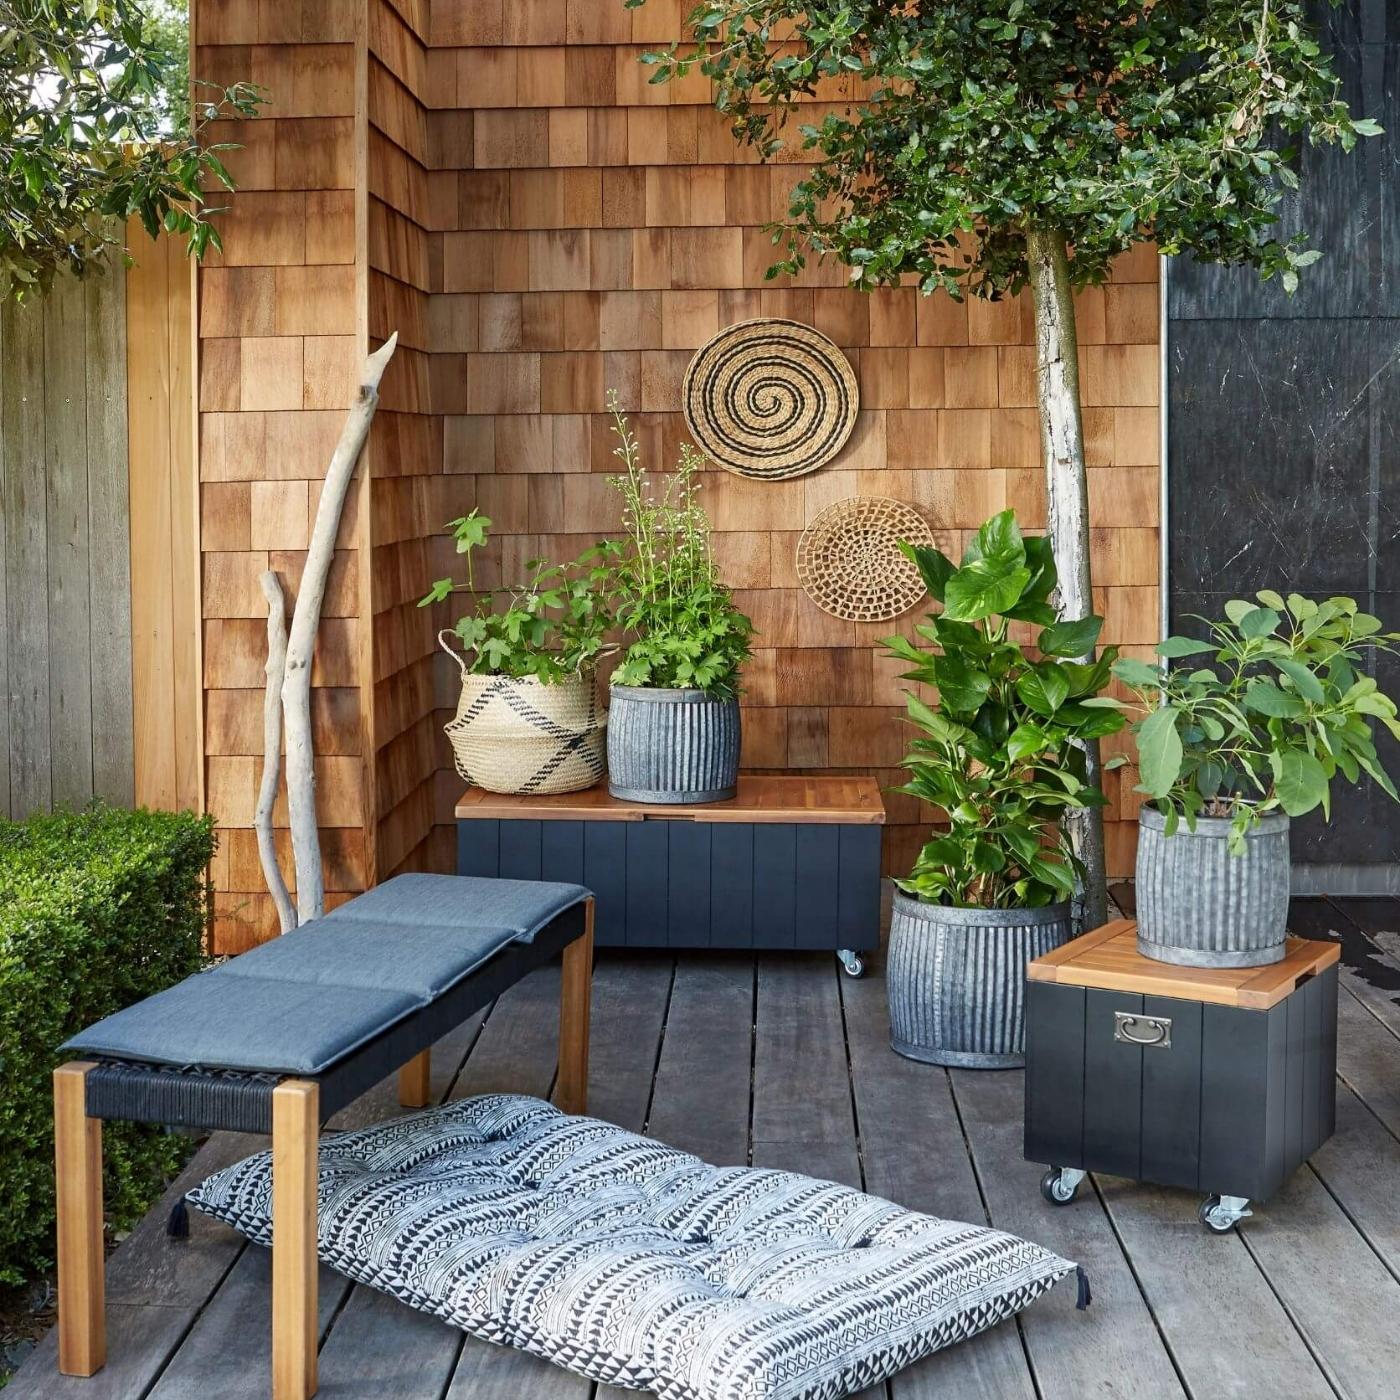 chesnut-outdoor-storage-chest-in-garden.jpg